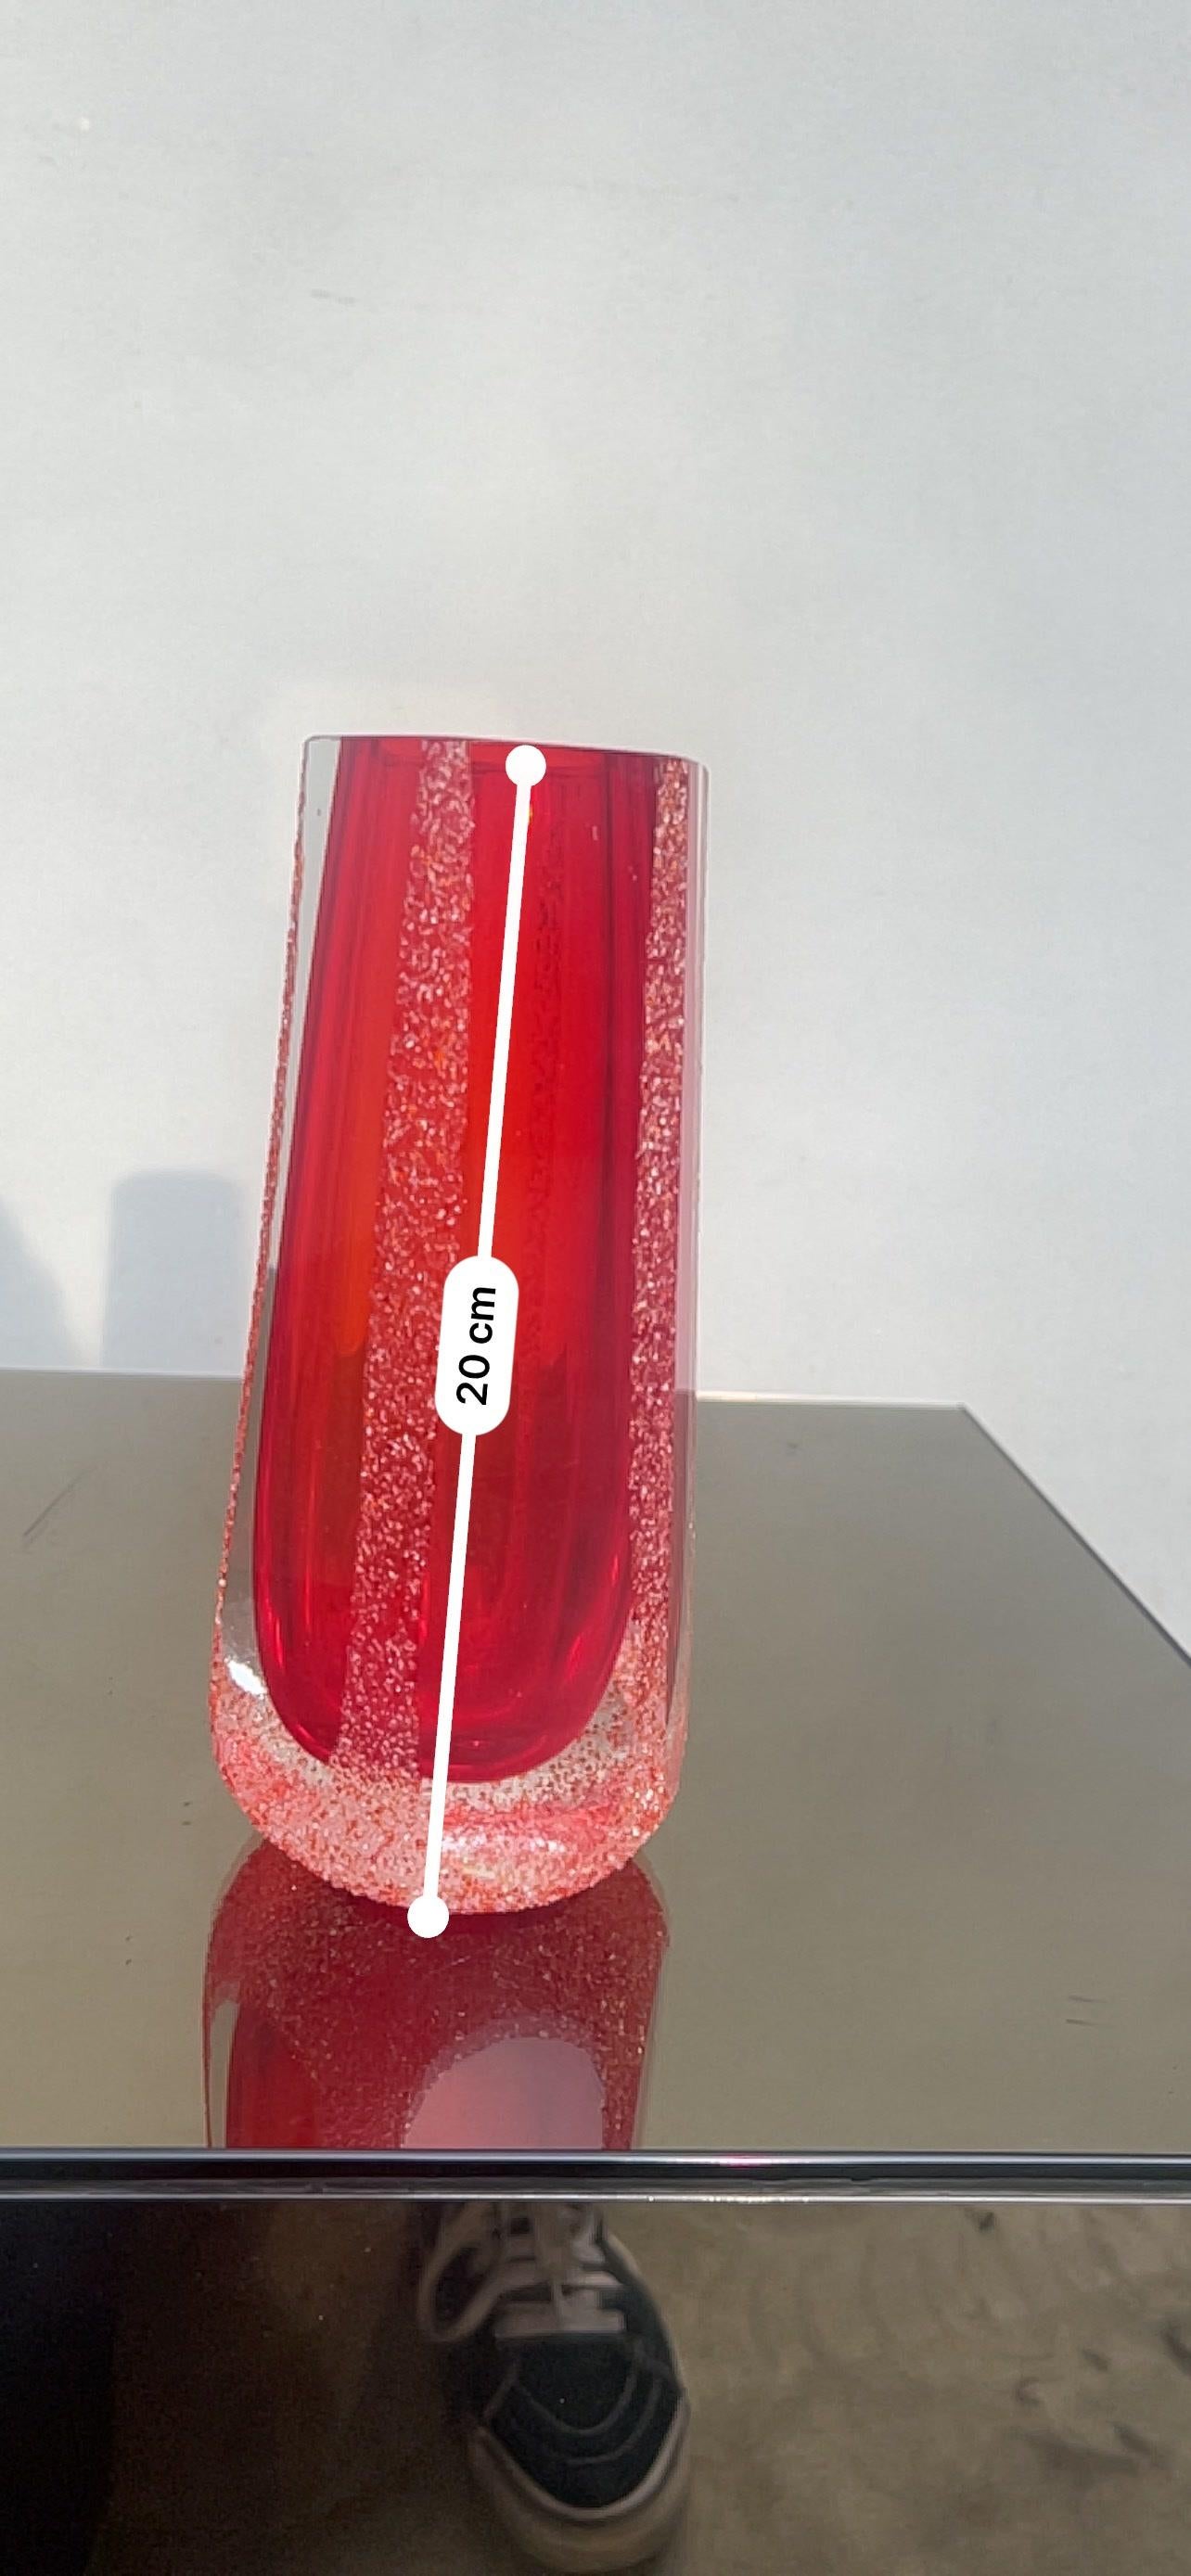 Vaso modernista in vetro di Murano sommerso, anni '70

Vaso modernista in vetro di Murano sommerso, anni '70
 vaso sommerso in vetro di murano (20cm), rosso. È in uno stato magnifico, senza colpi o scheggiature. Periodo del design 1970 - 1979